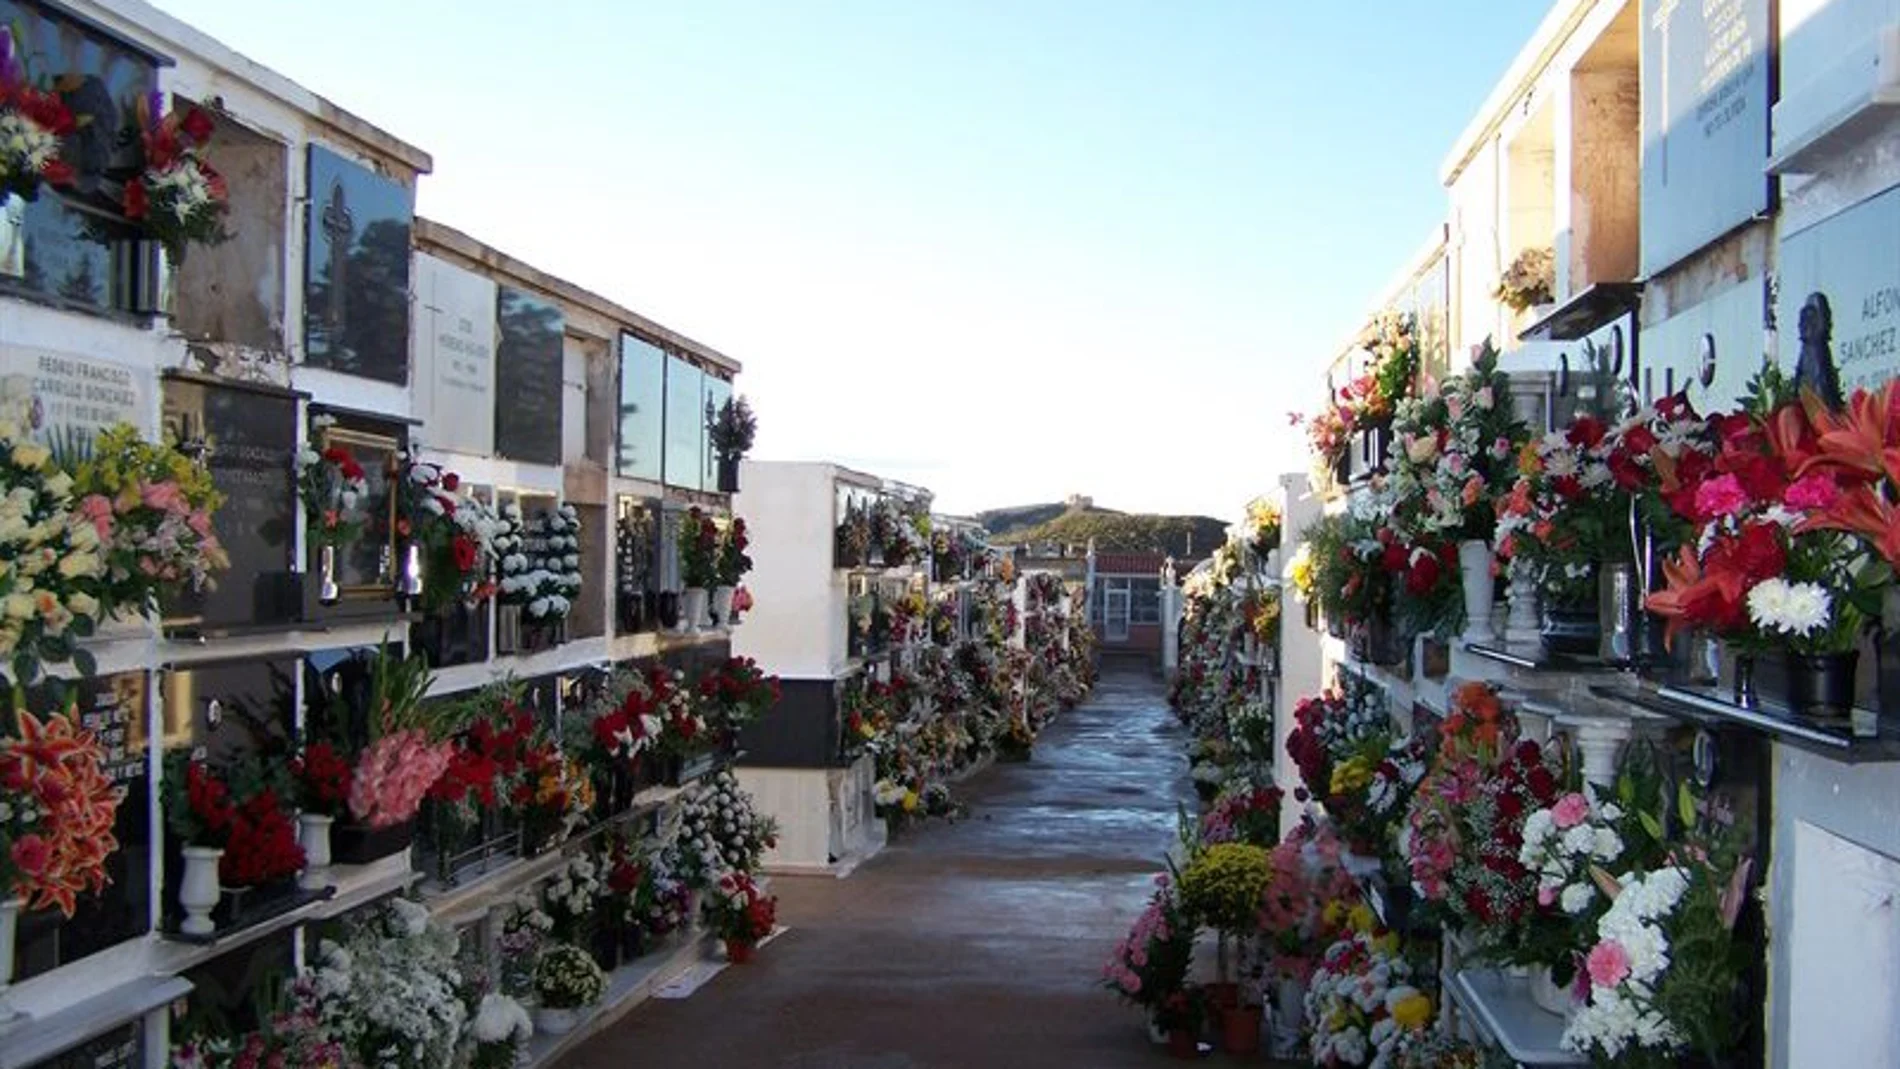 Las tumbas se engalanan de flores en reconocimiento a los difuntos